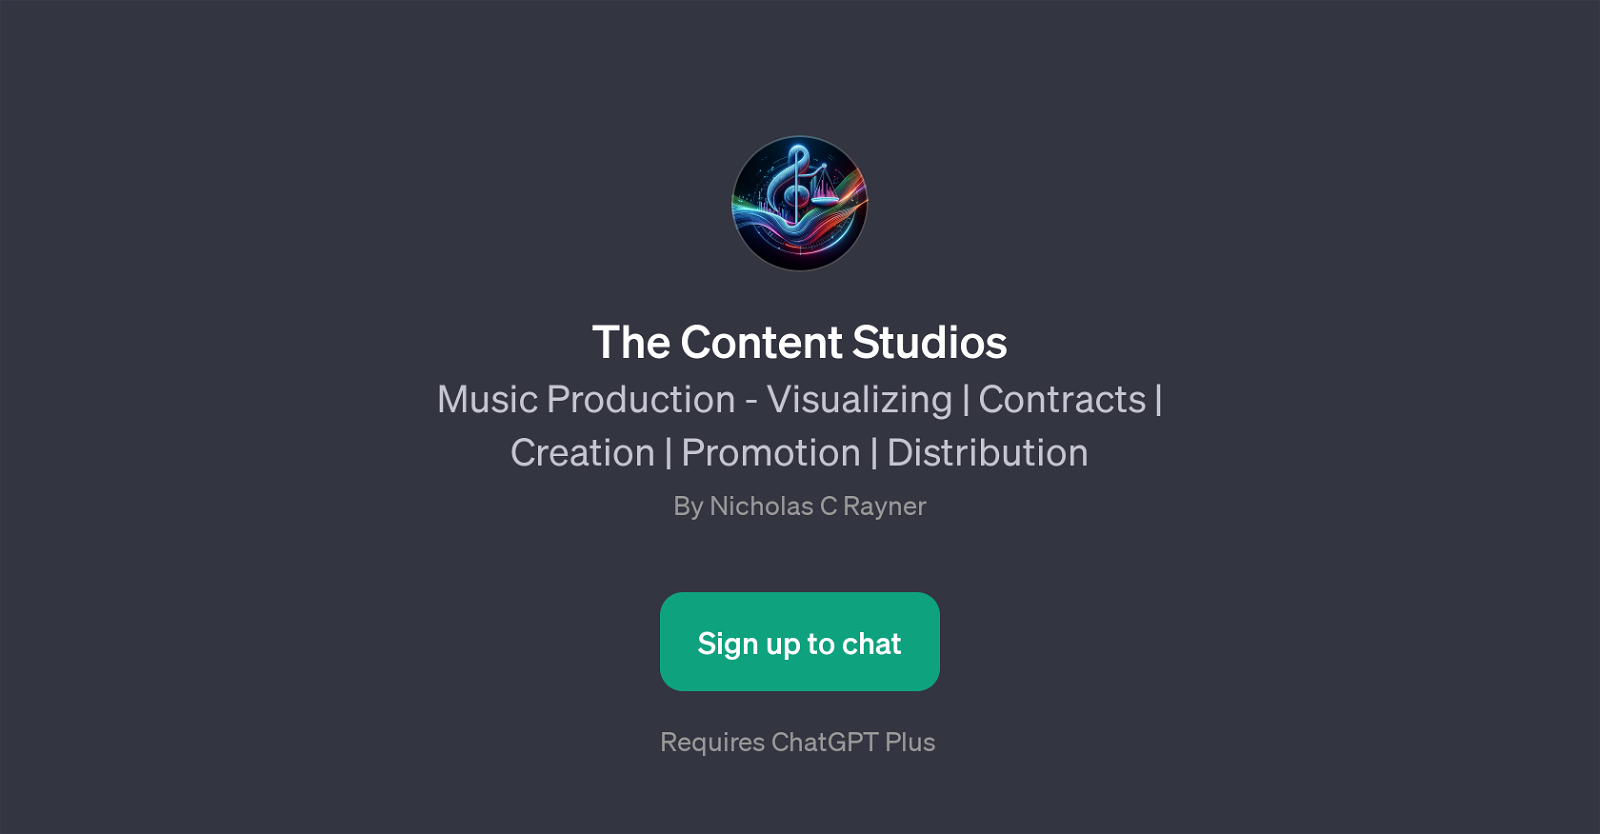 The Content Studios website